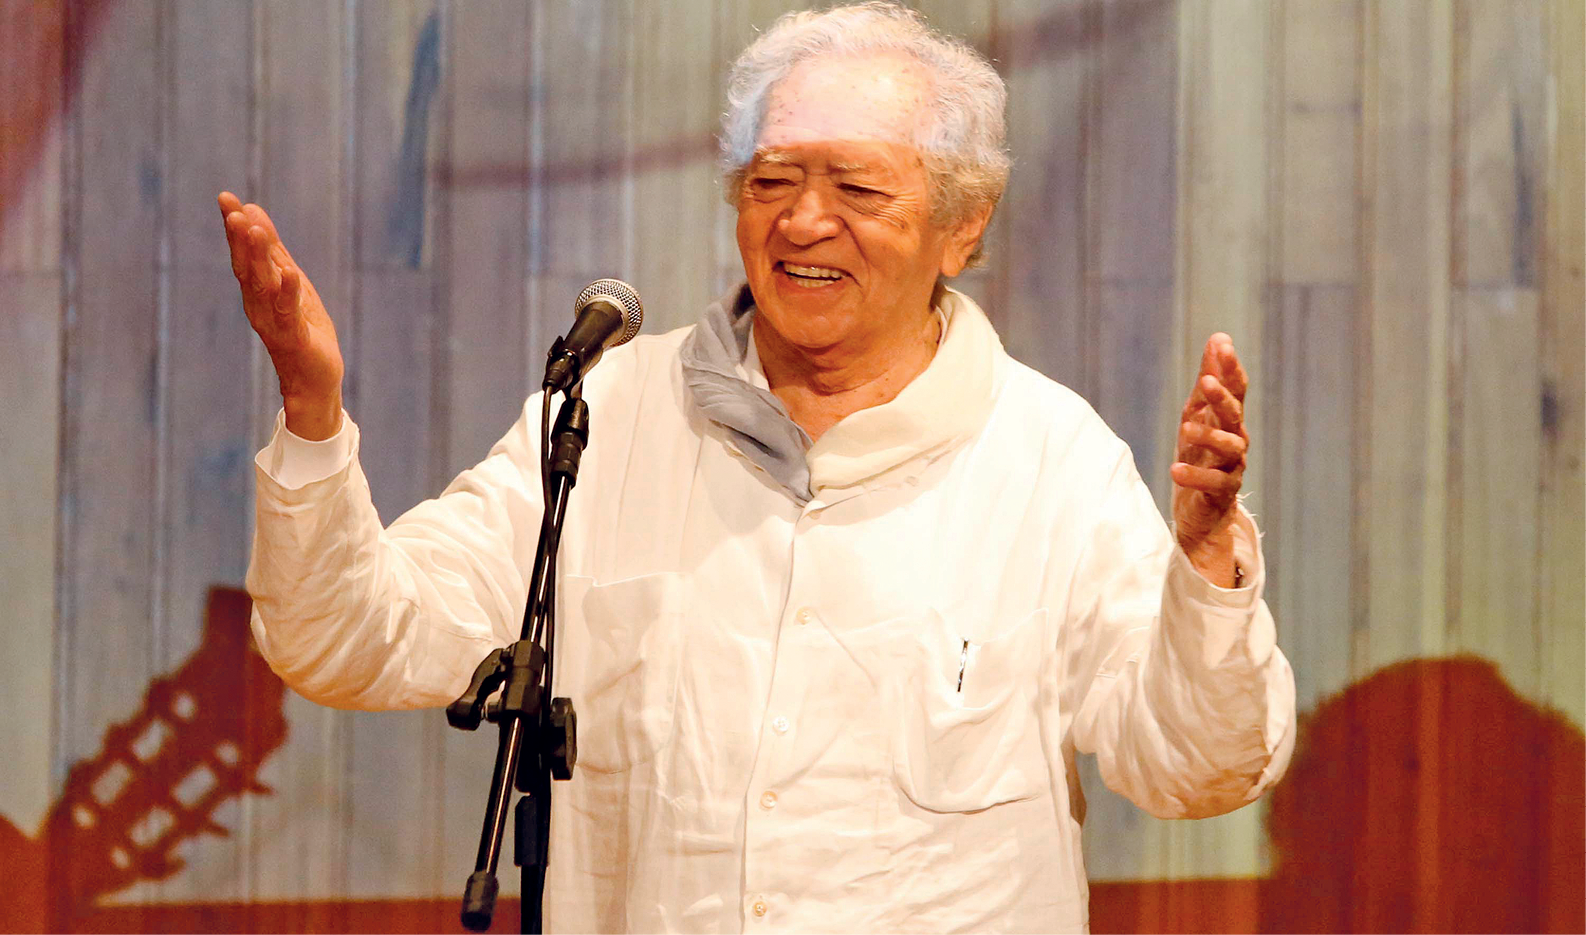 Fotografia de um idoso, de cabelos brancos e usando camisa branca. Ele está na frente de um microfone, sorrindo, e com os braços abertos.